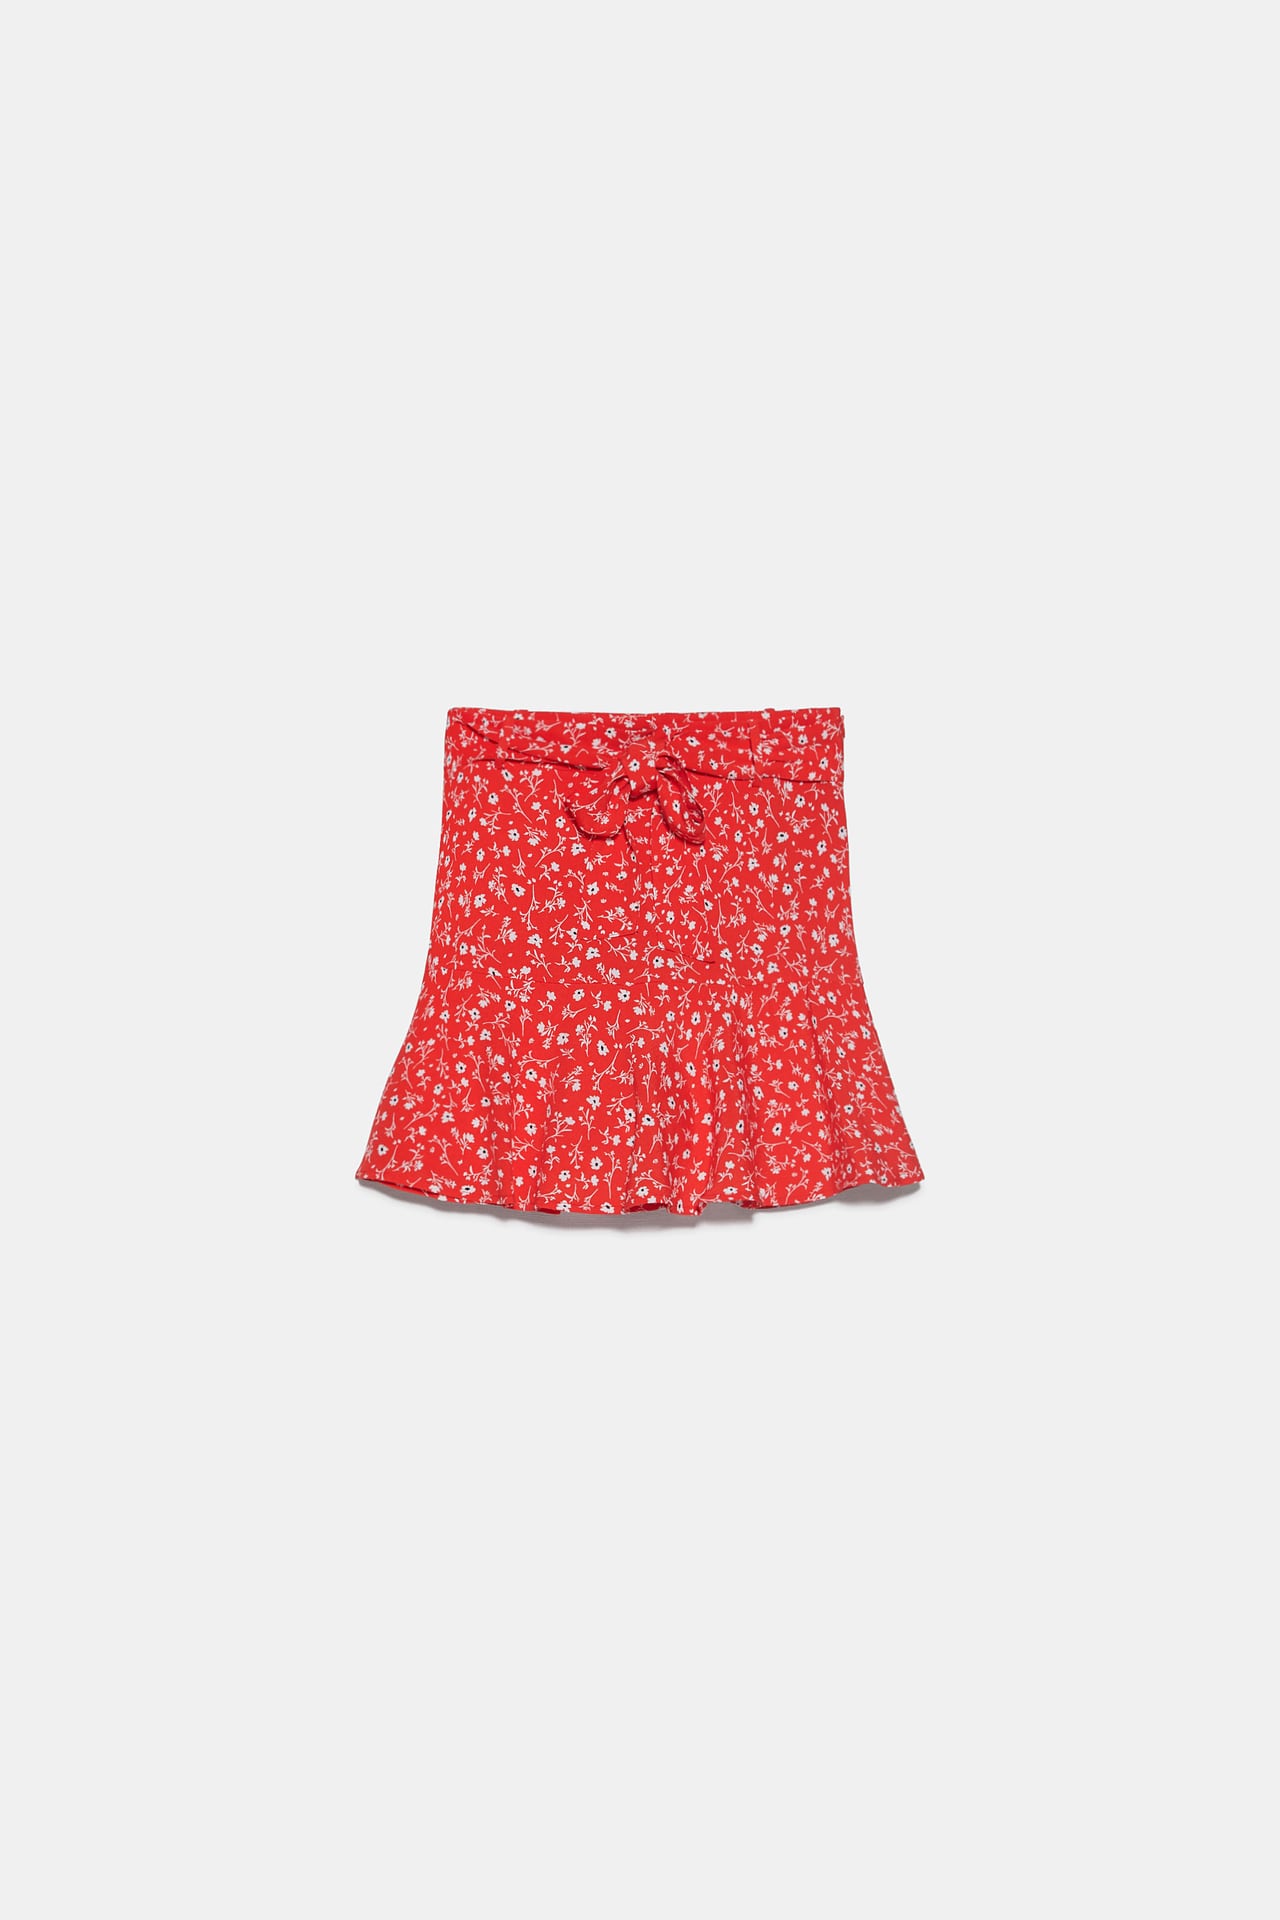 Esta es la falda pantalón de flores de Zara más cómoda y favorecedora de la temporada